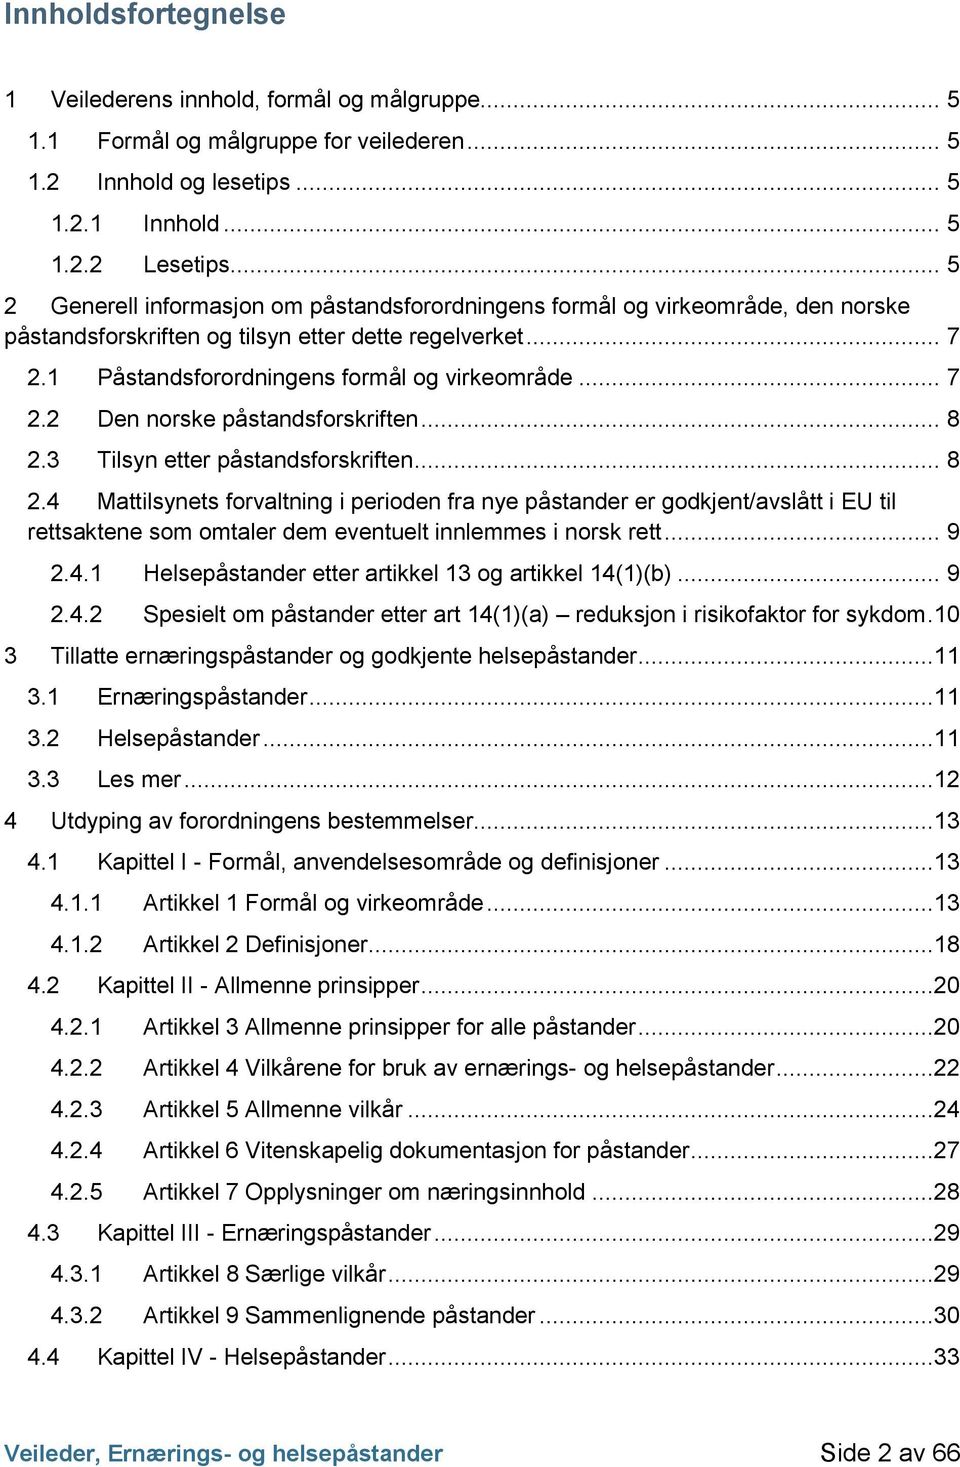 3 Påstandsforordningens formål og virkeområde... 7 Den norske påstandsforskriften... 8 Tilsyn etter påstandsforskriften... 8 2.